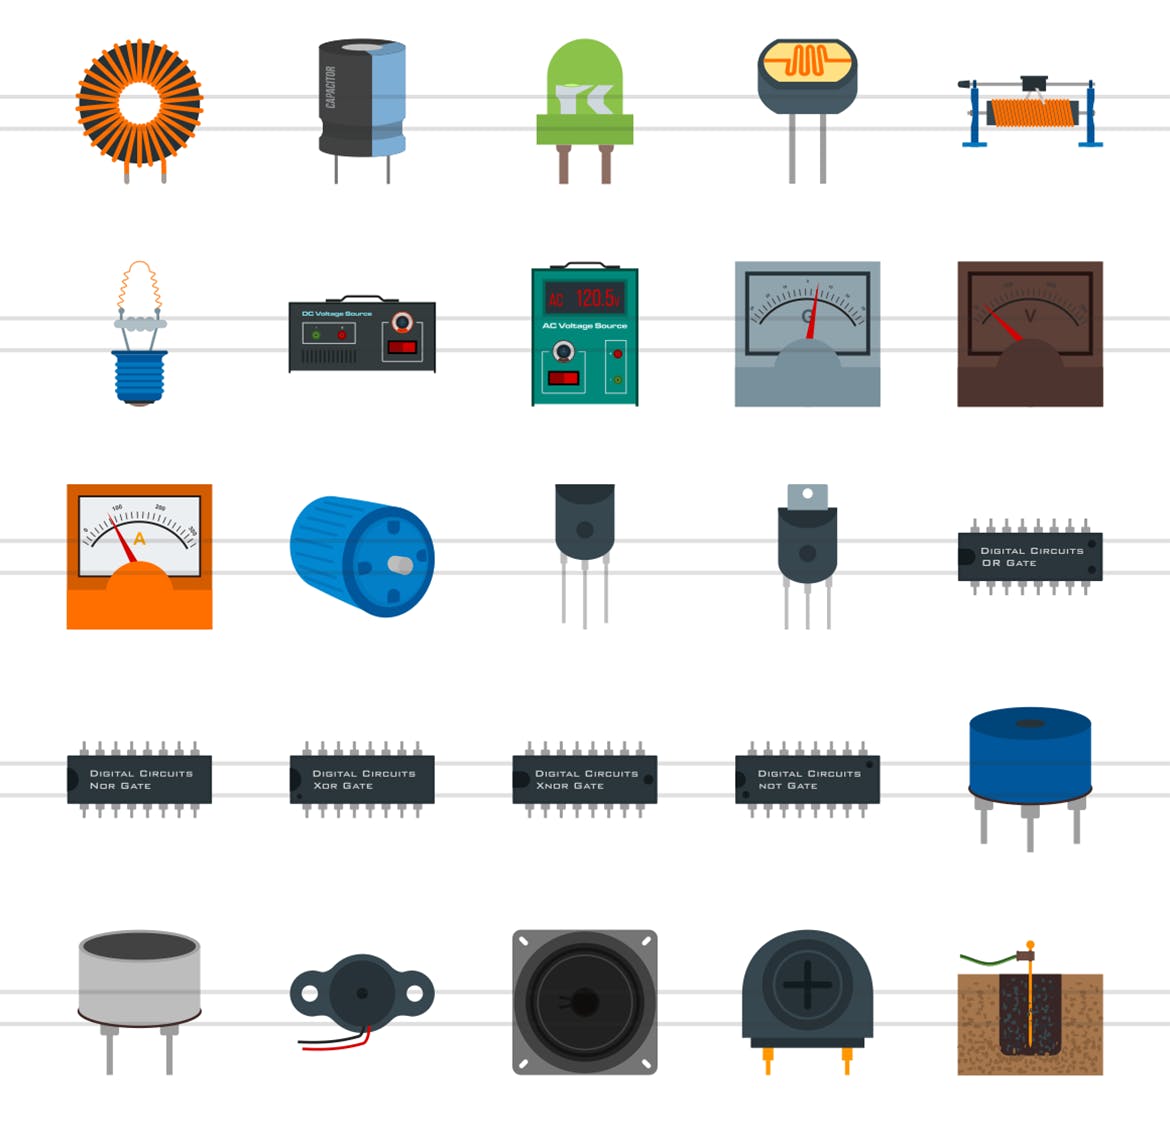 50枚电路线路板主题扁平化彩色矢量非凡图库精选图标 50 Electric Circuits Flat Multicolor Icons插图(2)